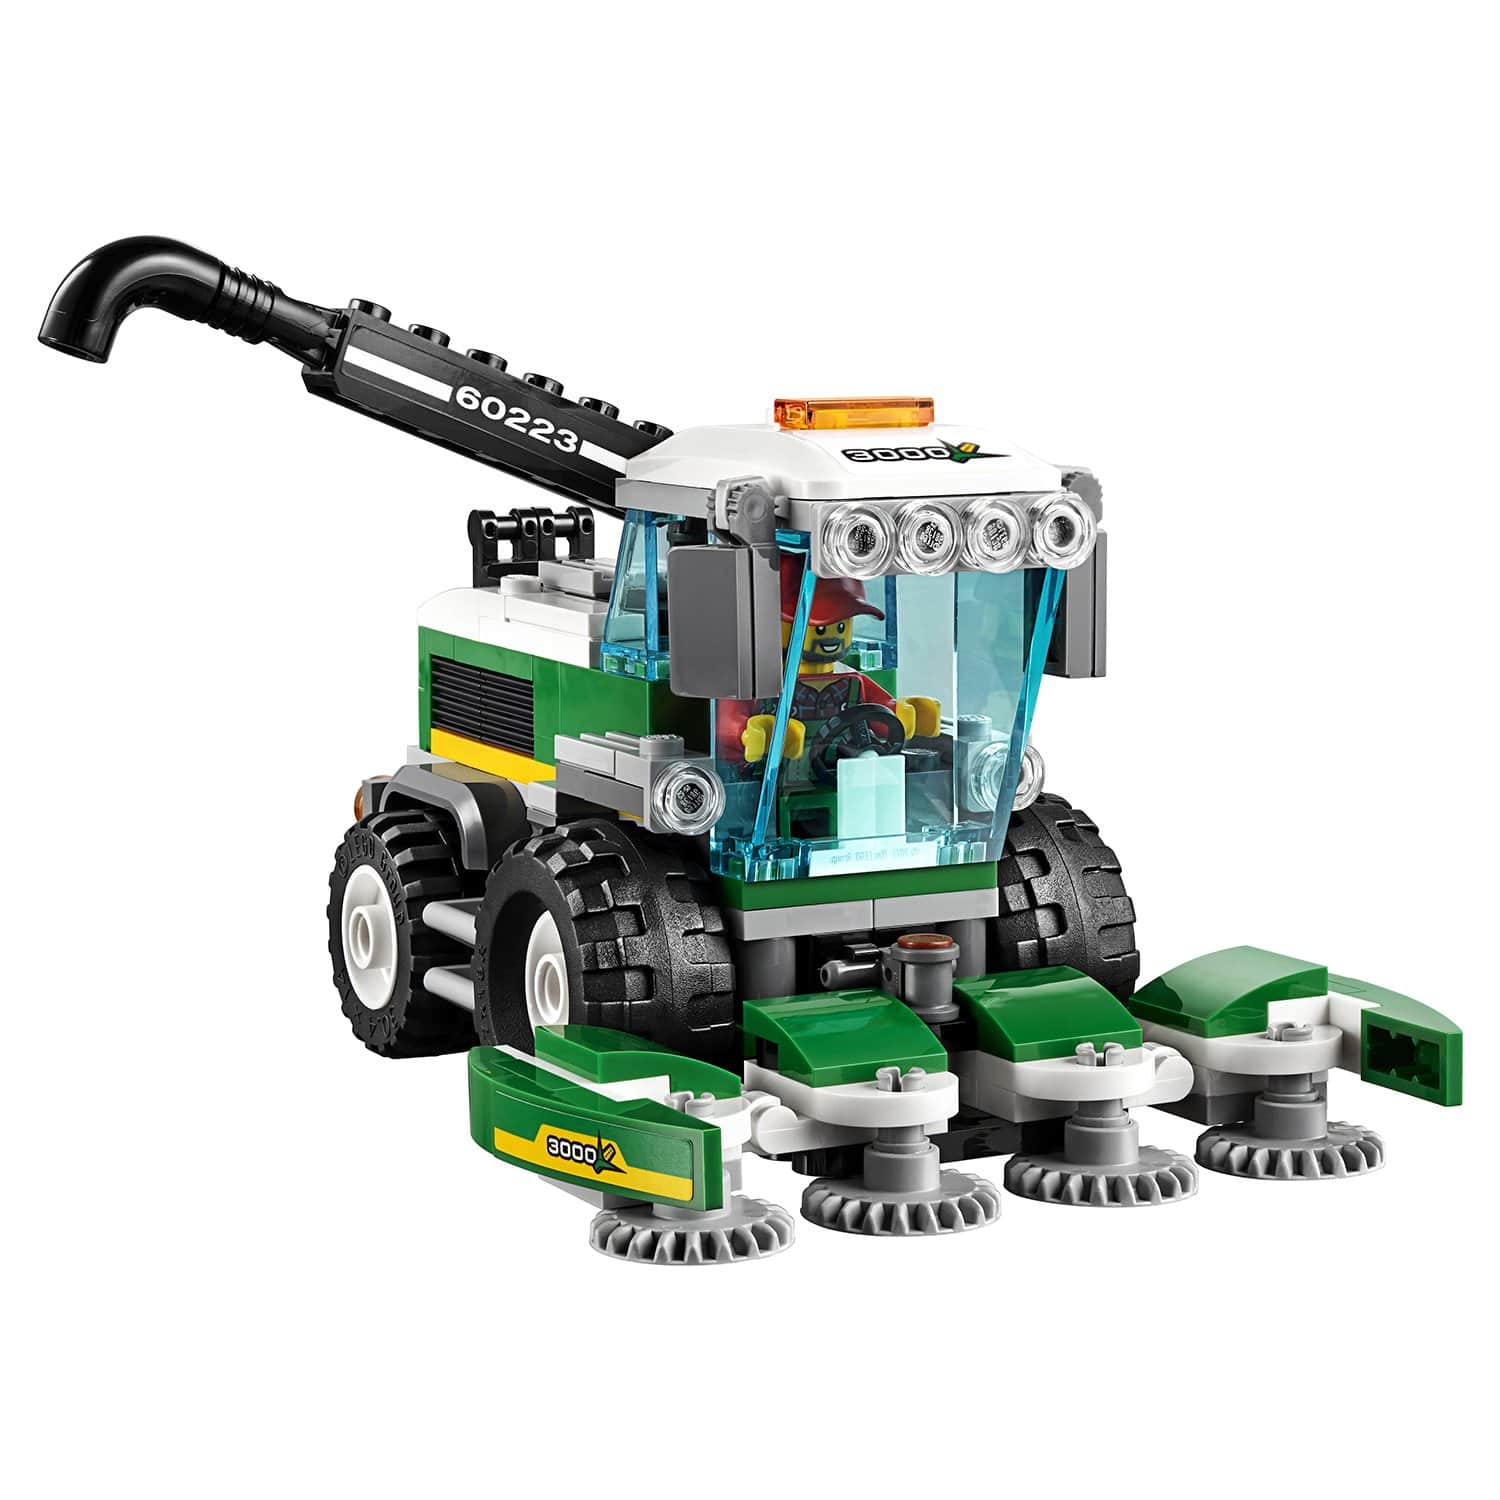 Конструктор LEGO City 60223 Транспортировщик для комбайнов